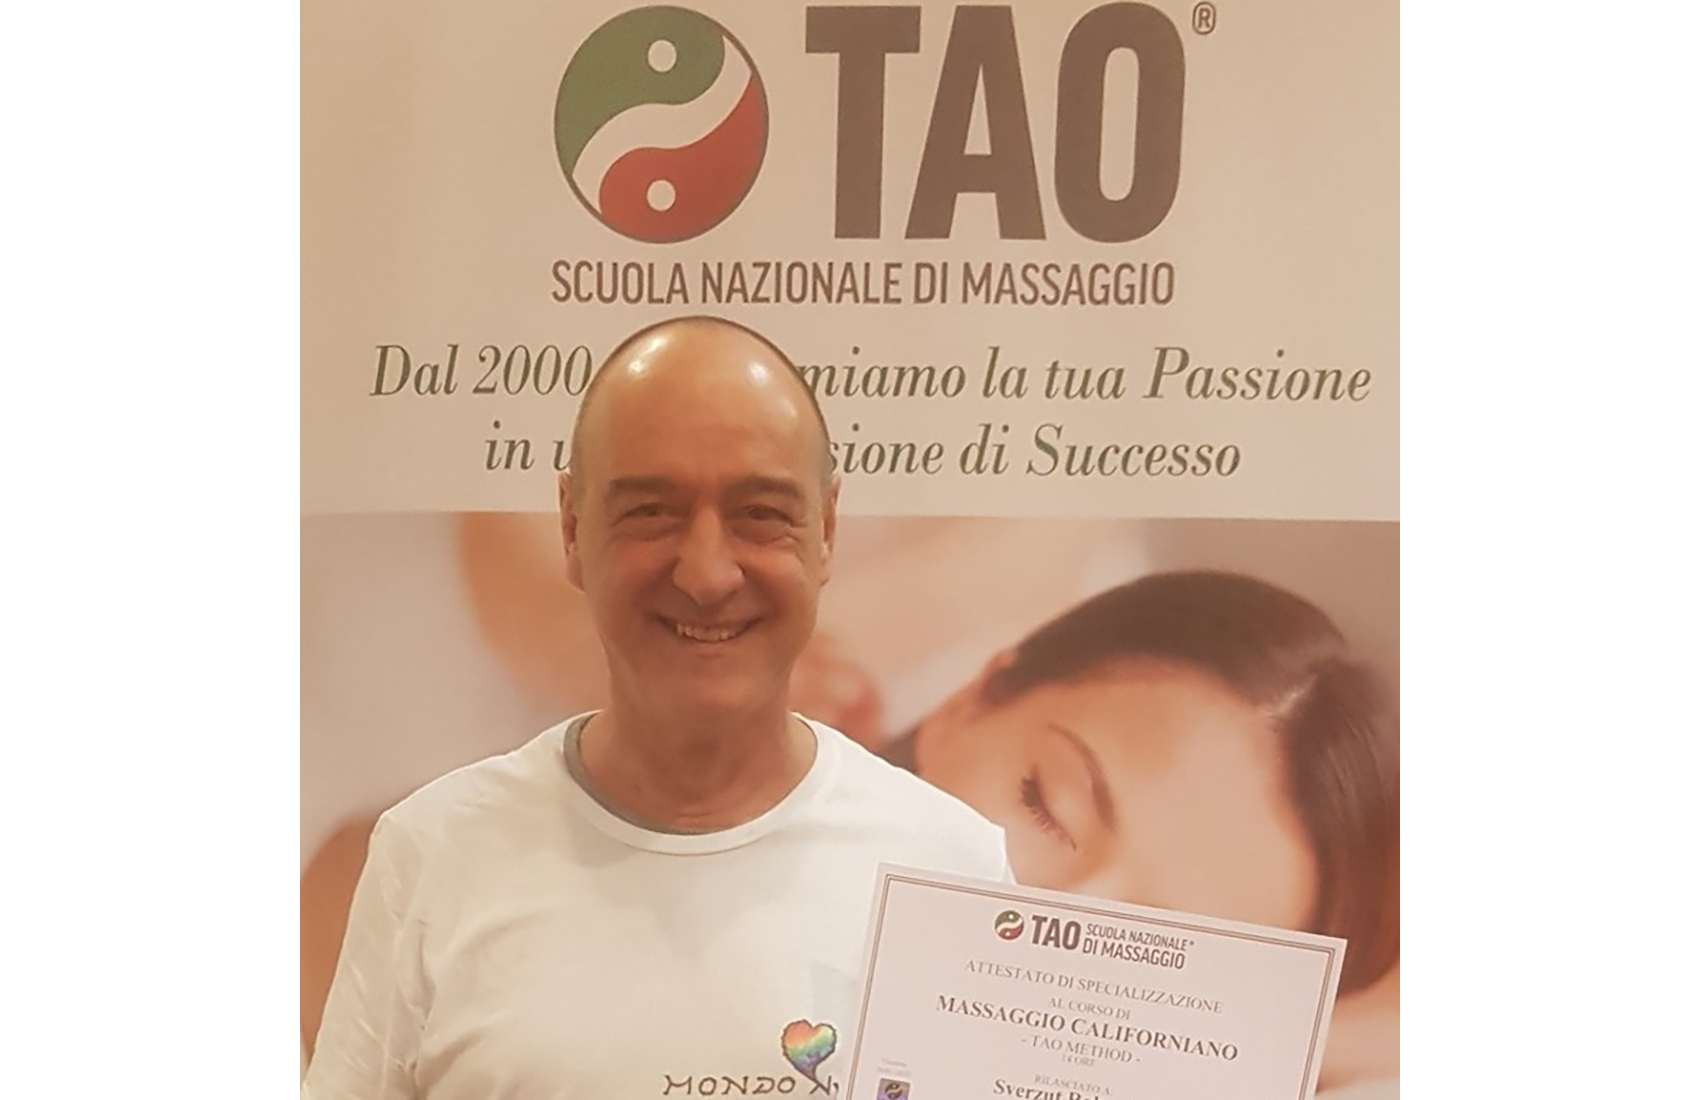 Roberto Sverzut - Operatore Olistico del Massaggio - Tavagnacco - Tavagnacco